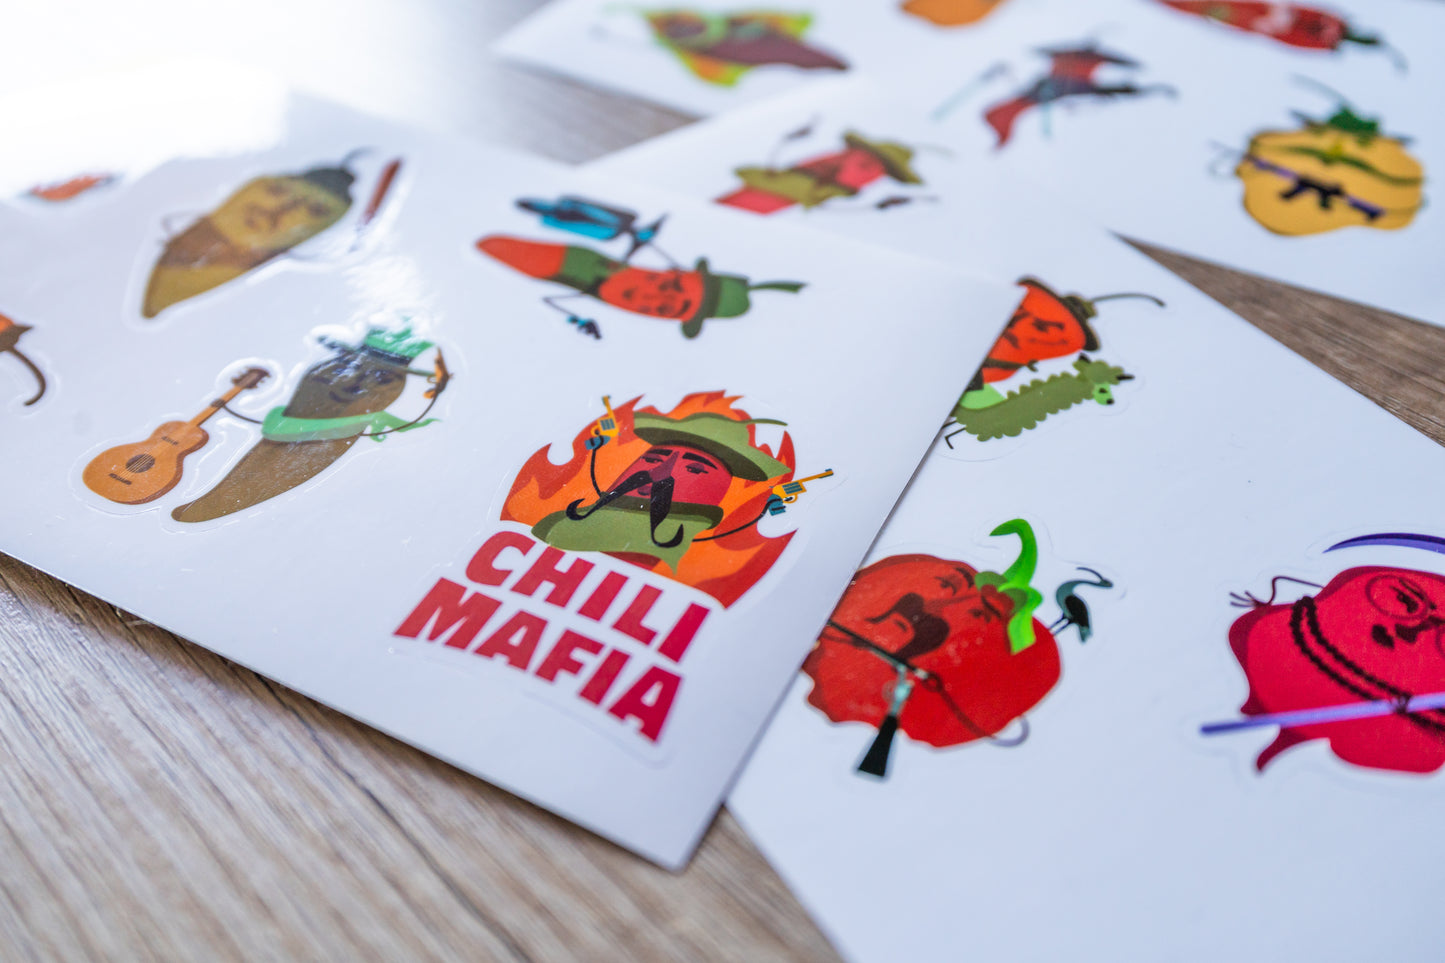 Chili Mafia stickers